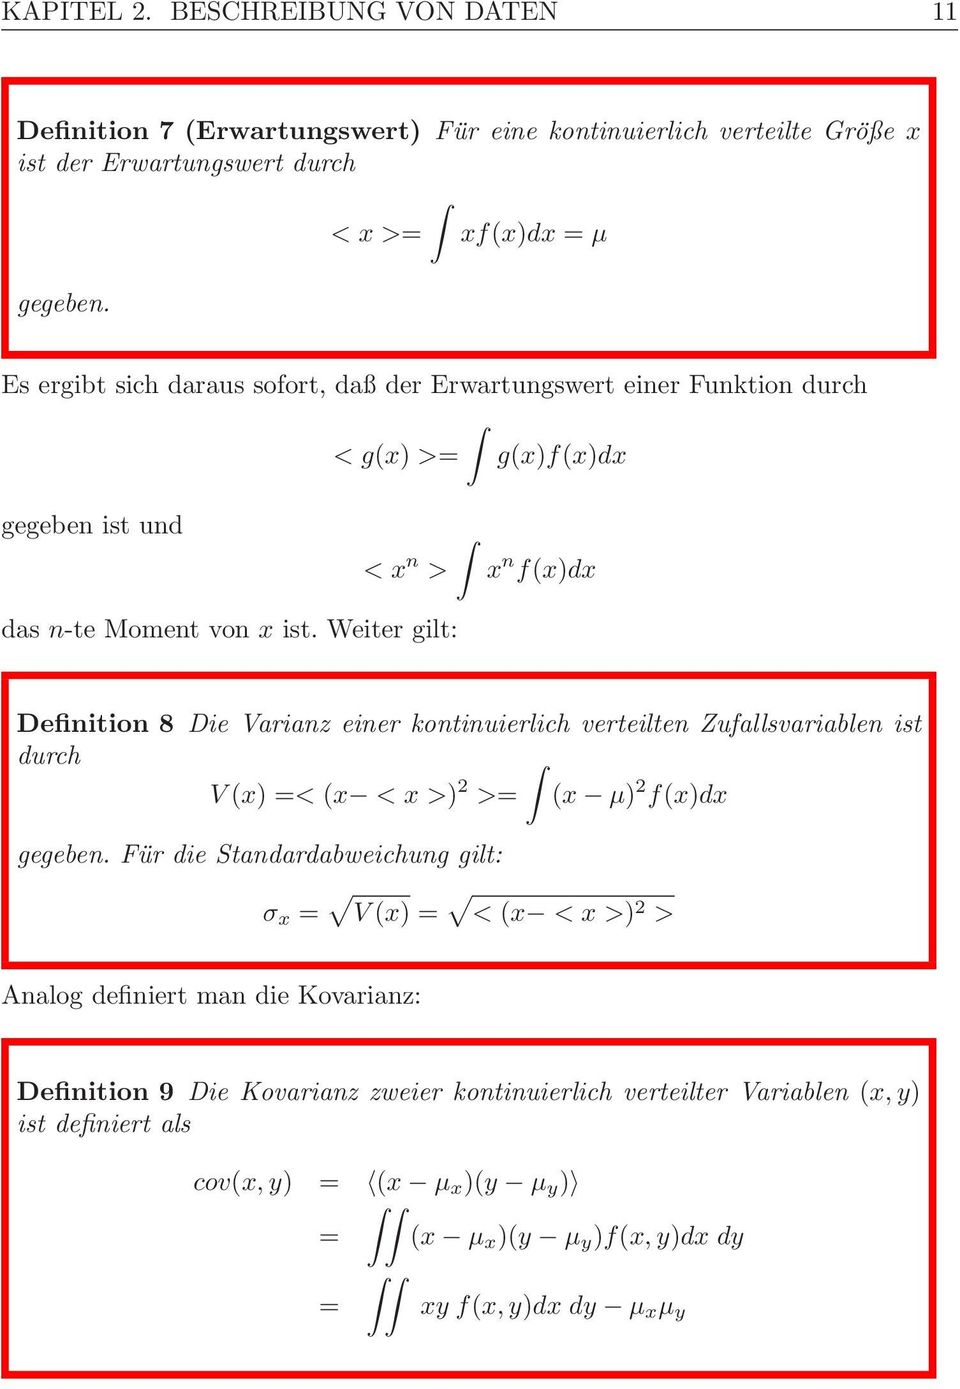 Weiter gilt: Definition 8 Die Varianz einer kontinuierlich verteilten Zufallsvariablen ist durch V (x) =< (x <x>) >= (x μ) f(x)dx gegeben.